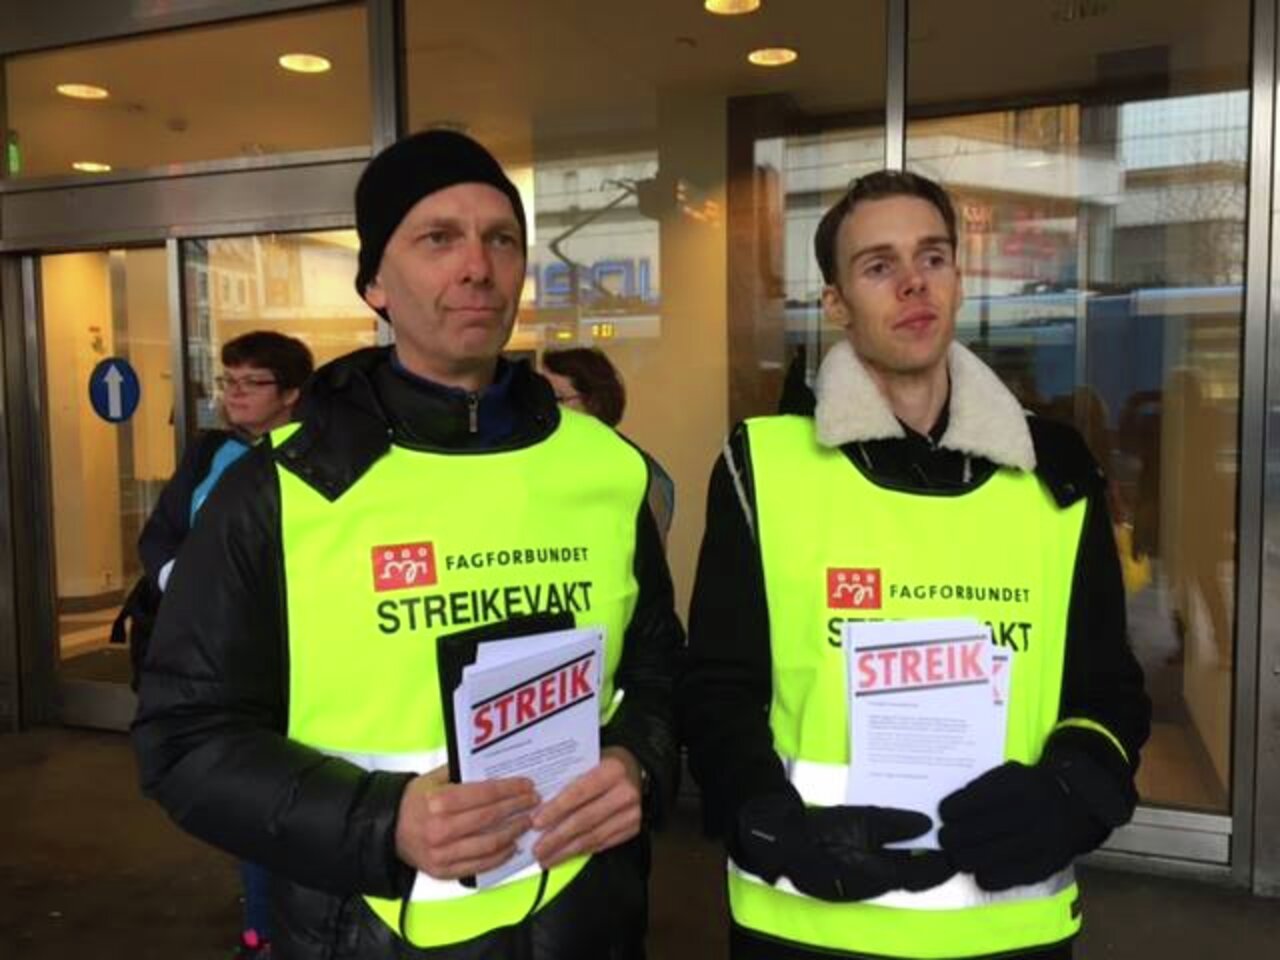 Håkon Aas og Erik Kristoffer Arnesen (fra venstre) har første streikevakta utenfor LHLs lokaler i Oslo, og er mer enn klare til kamp for en rettferdig pensjon.